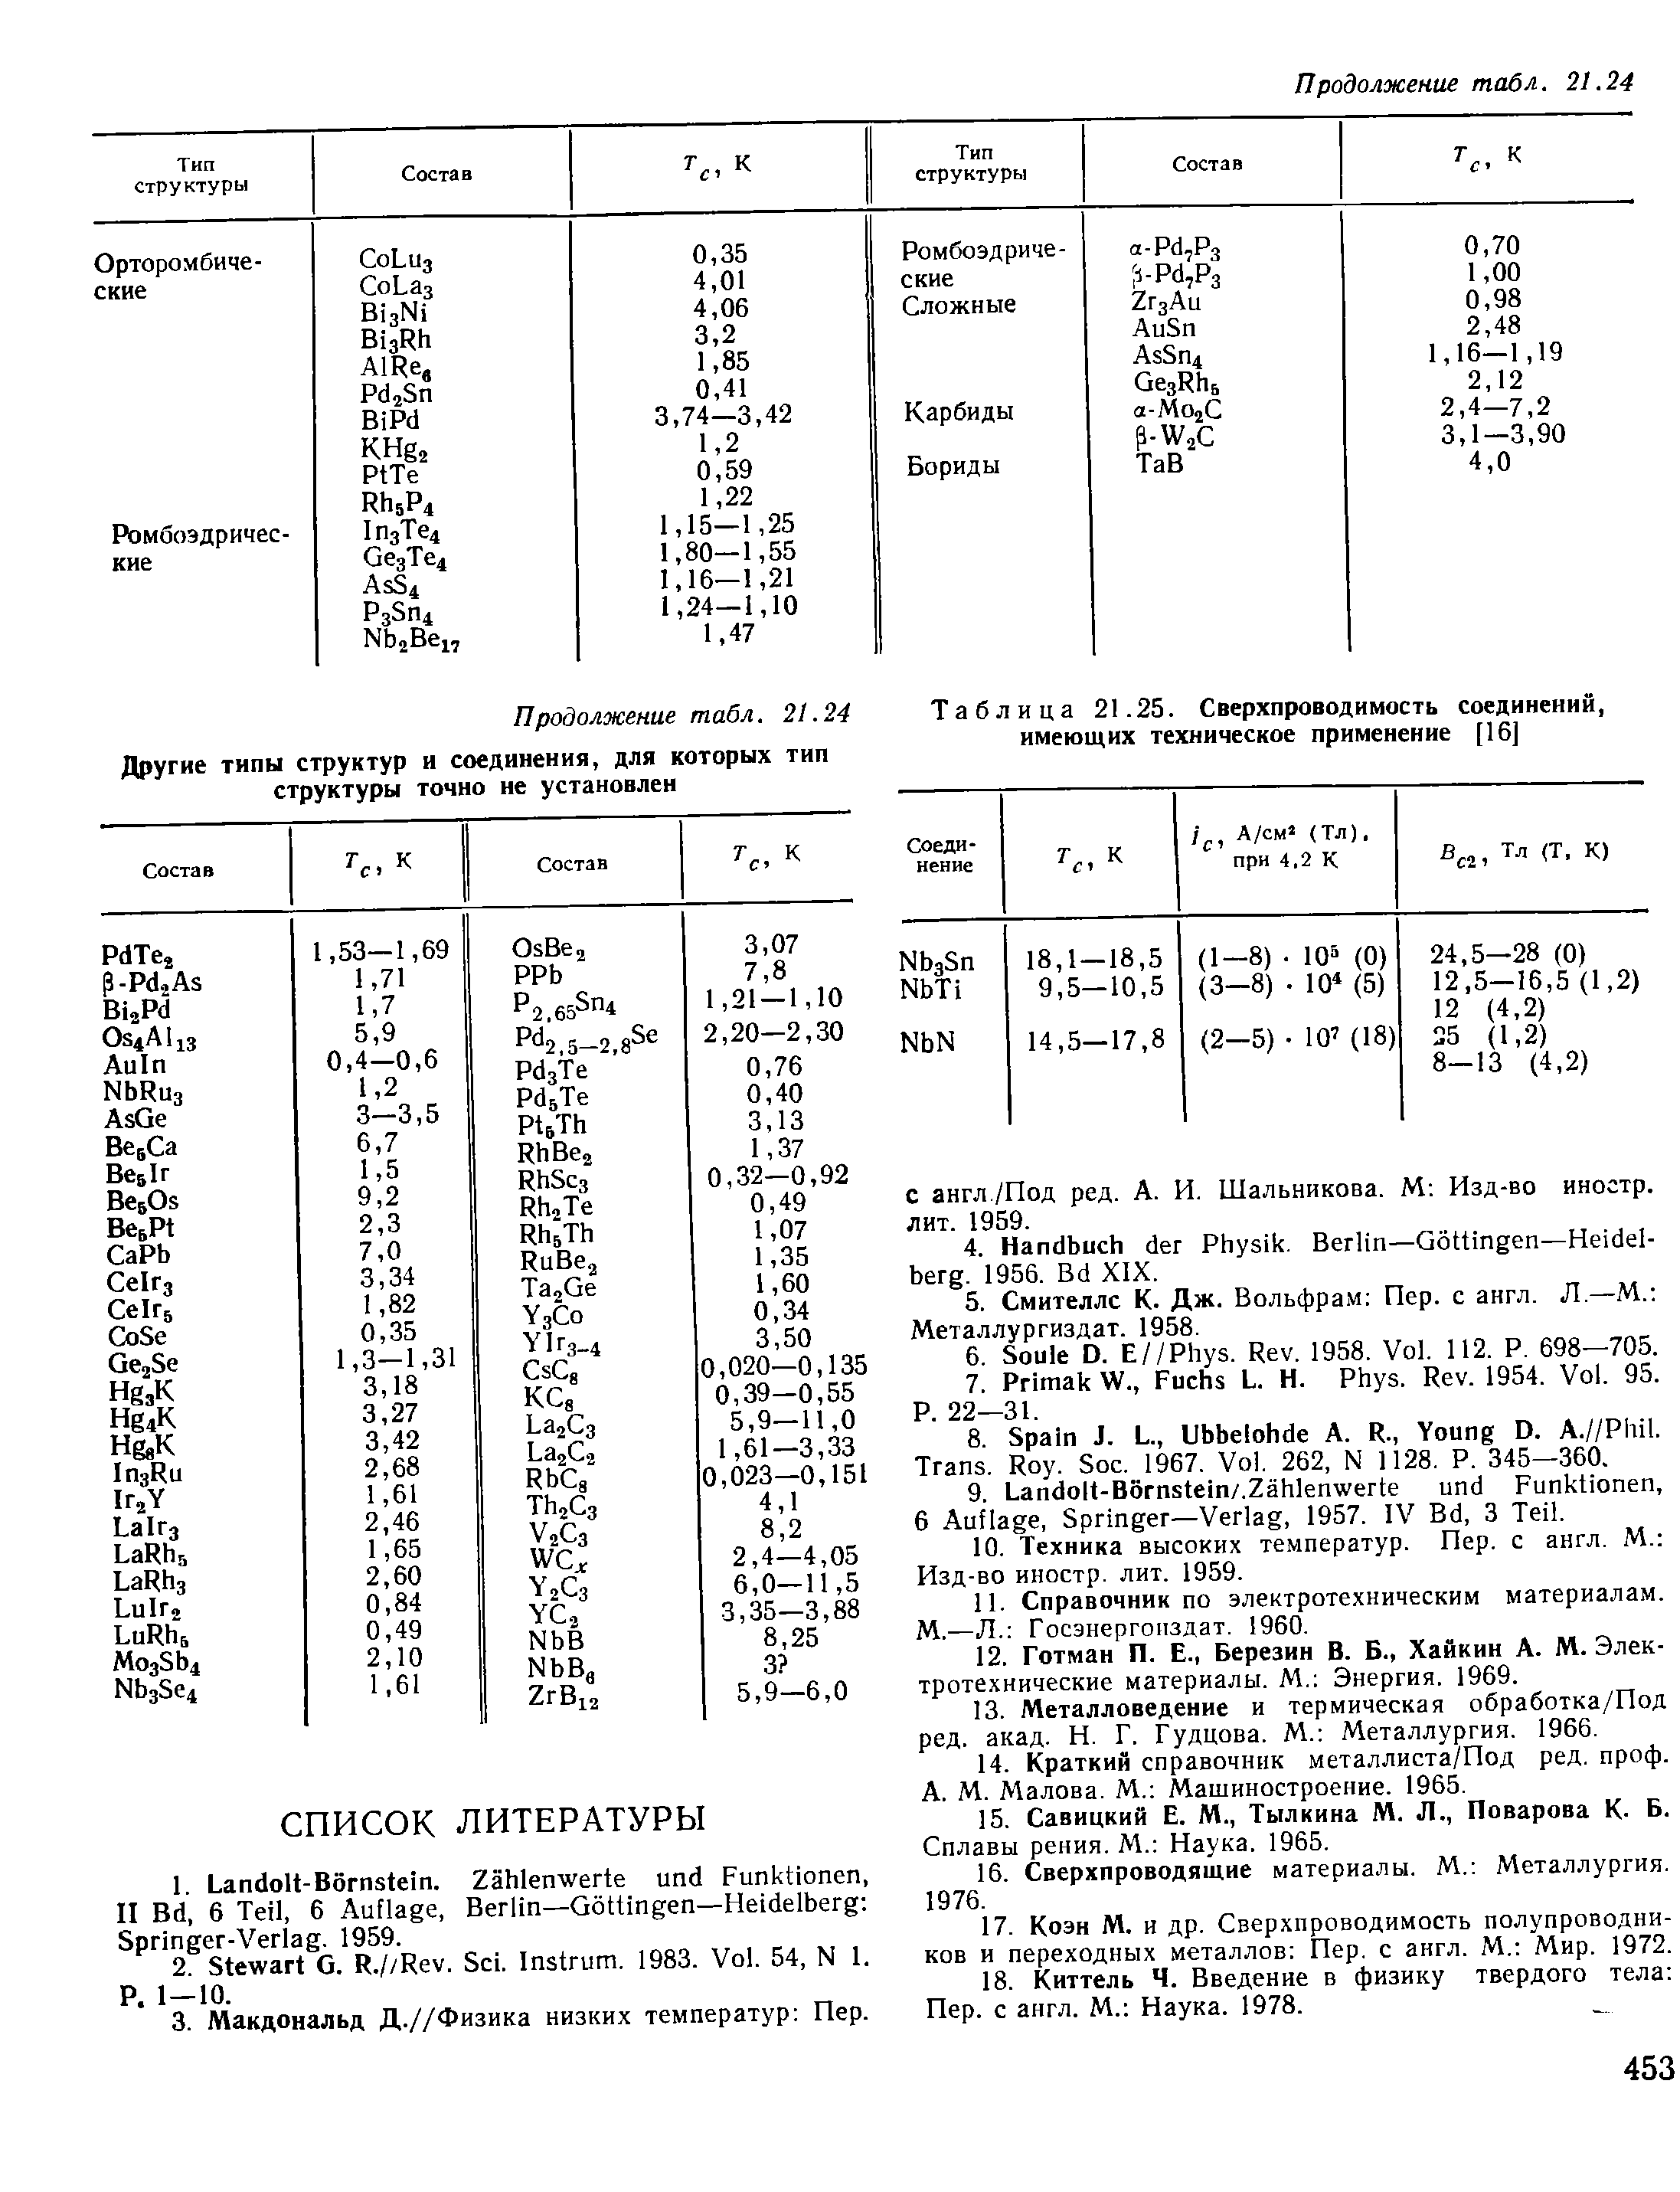 Таблица 21.25. Сверхпроводимость соединений, имеющих техническое применение [16]
